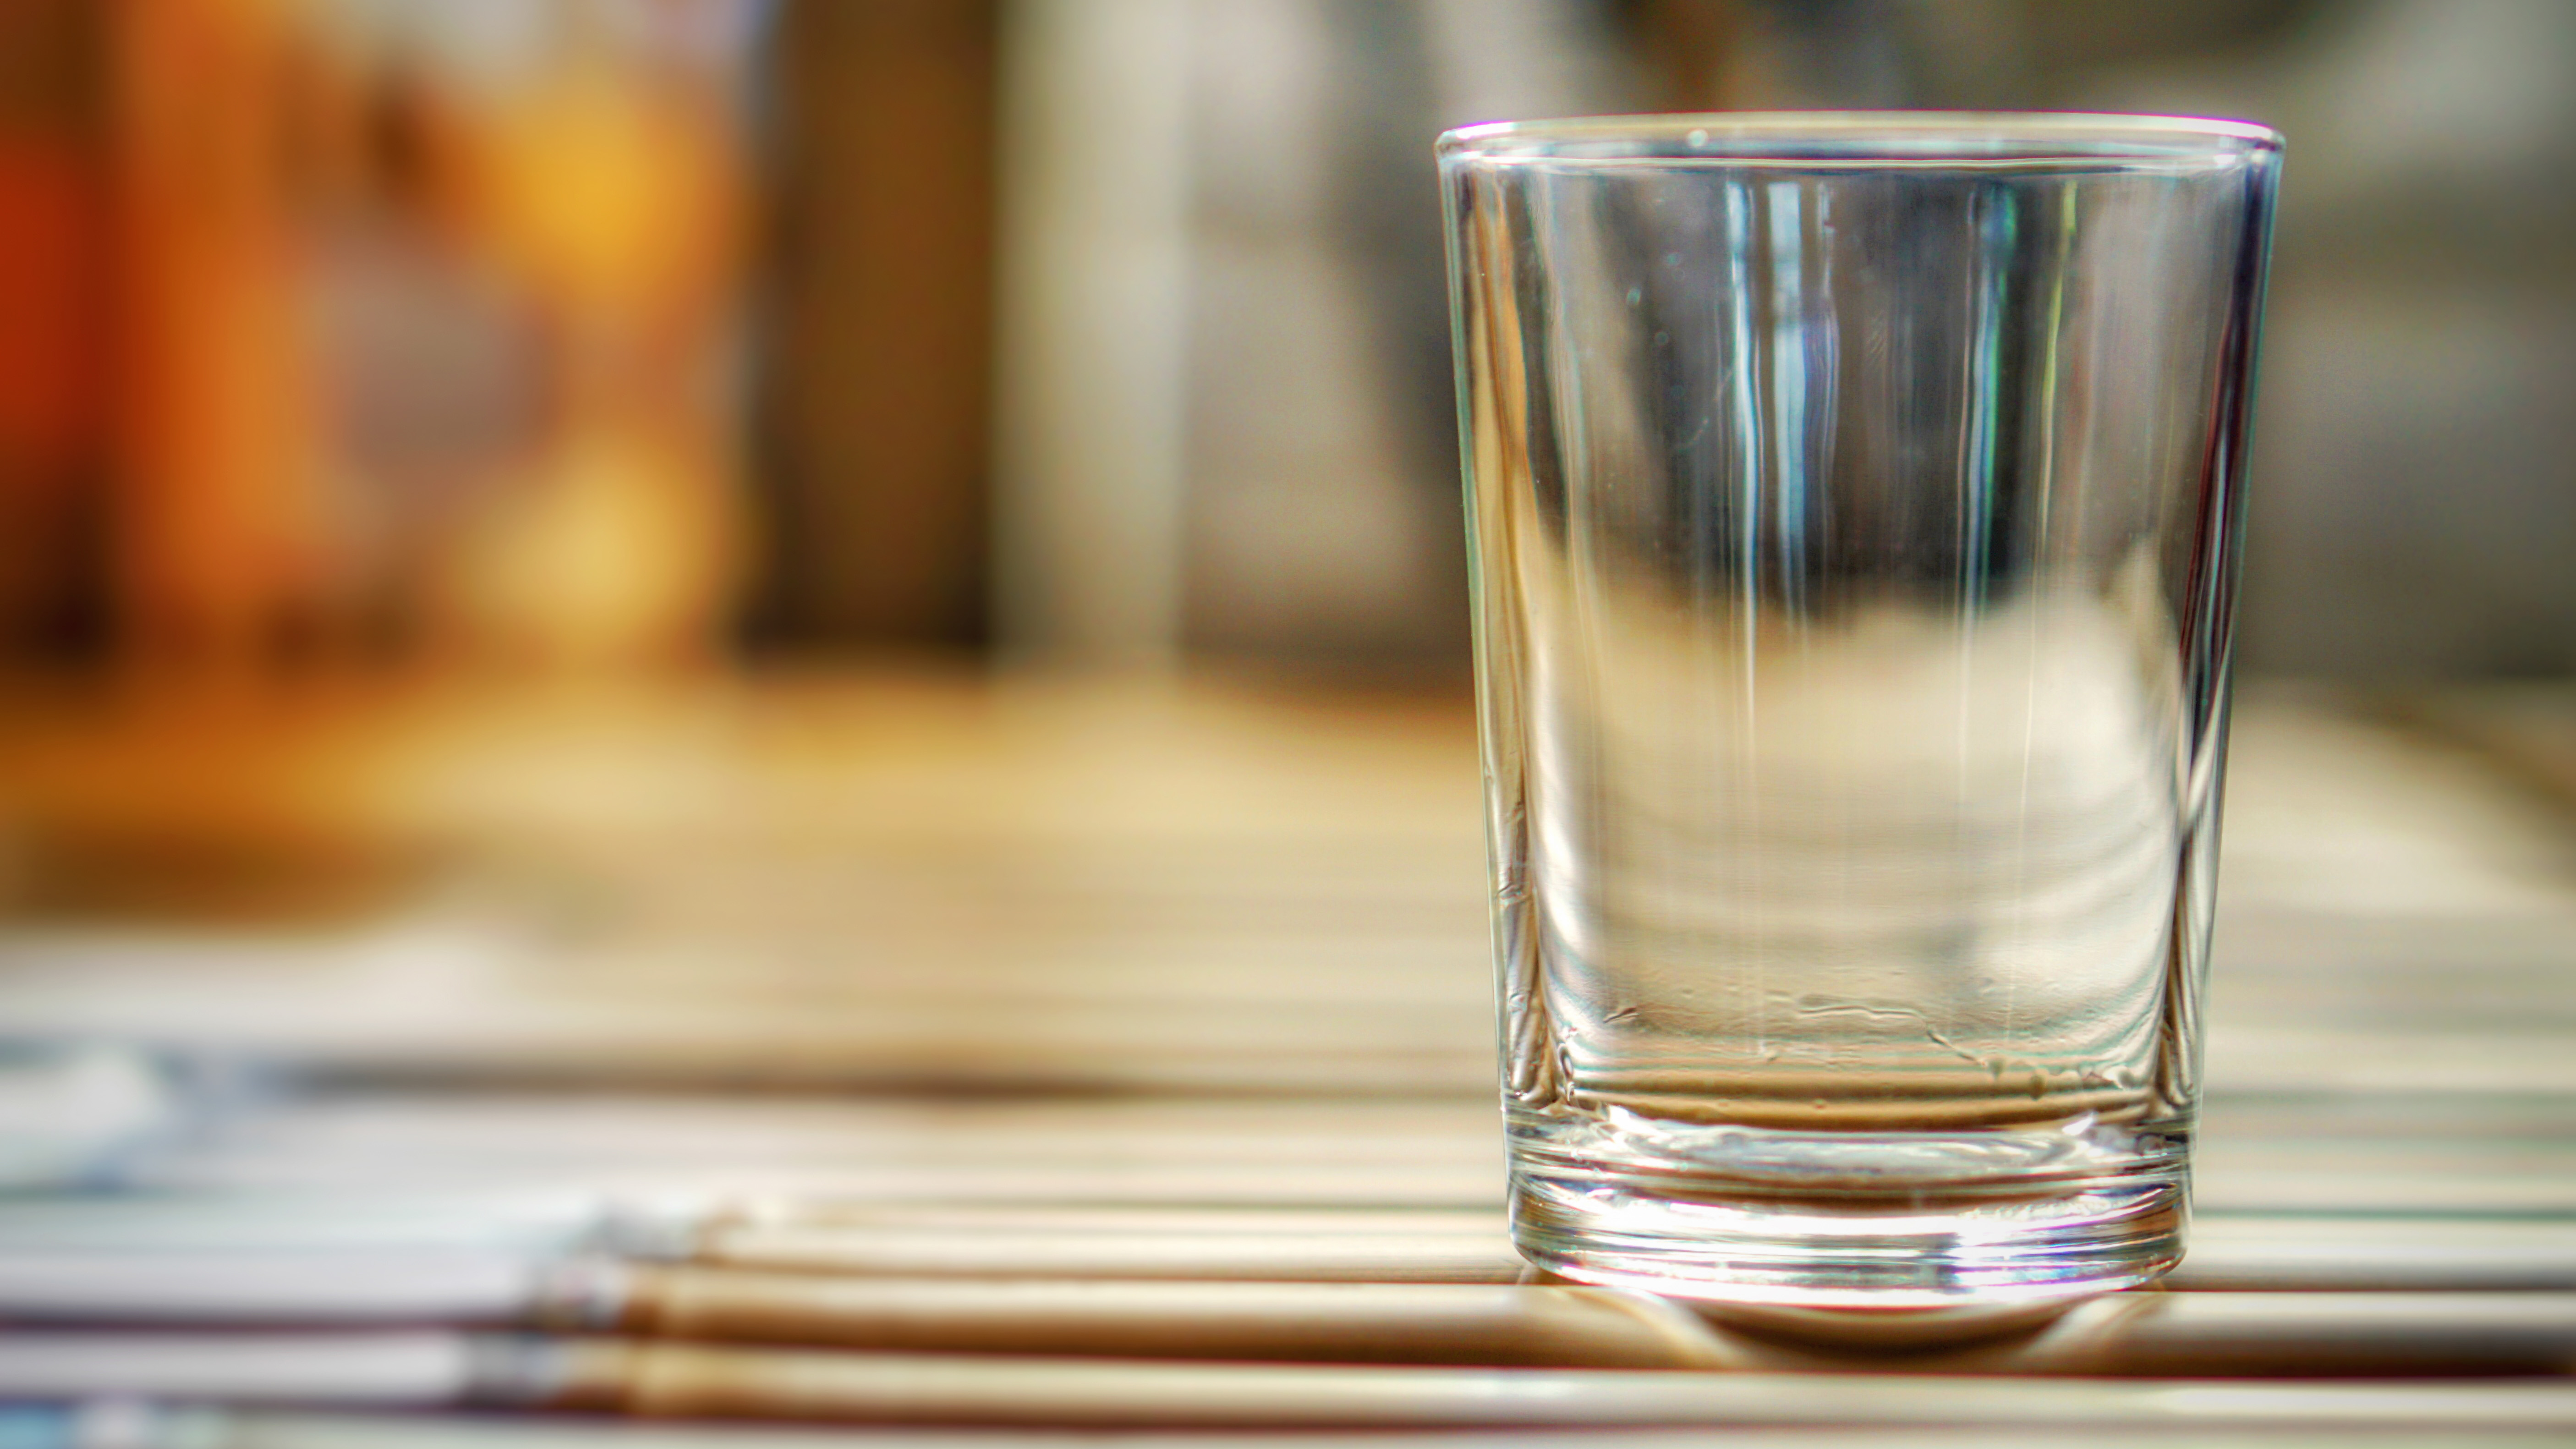 Пустой и чистый стакан для питья, стоящий на поверхности